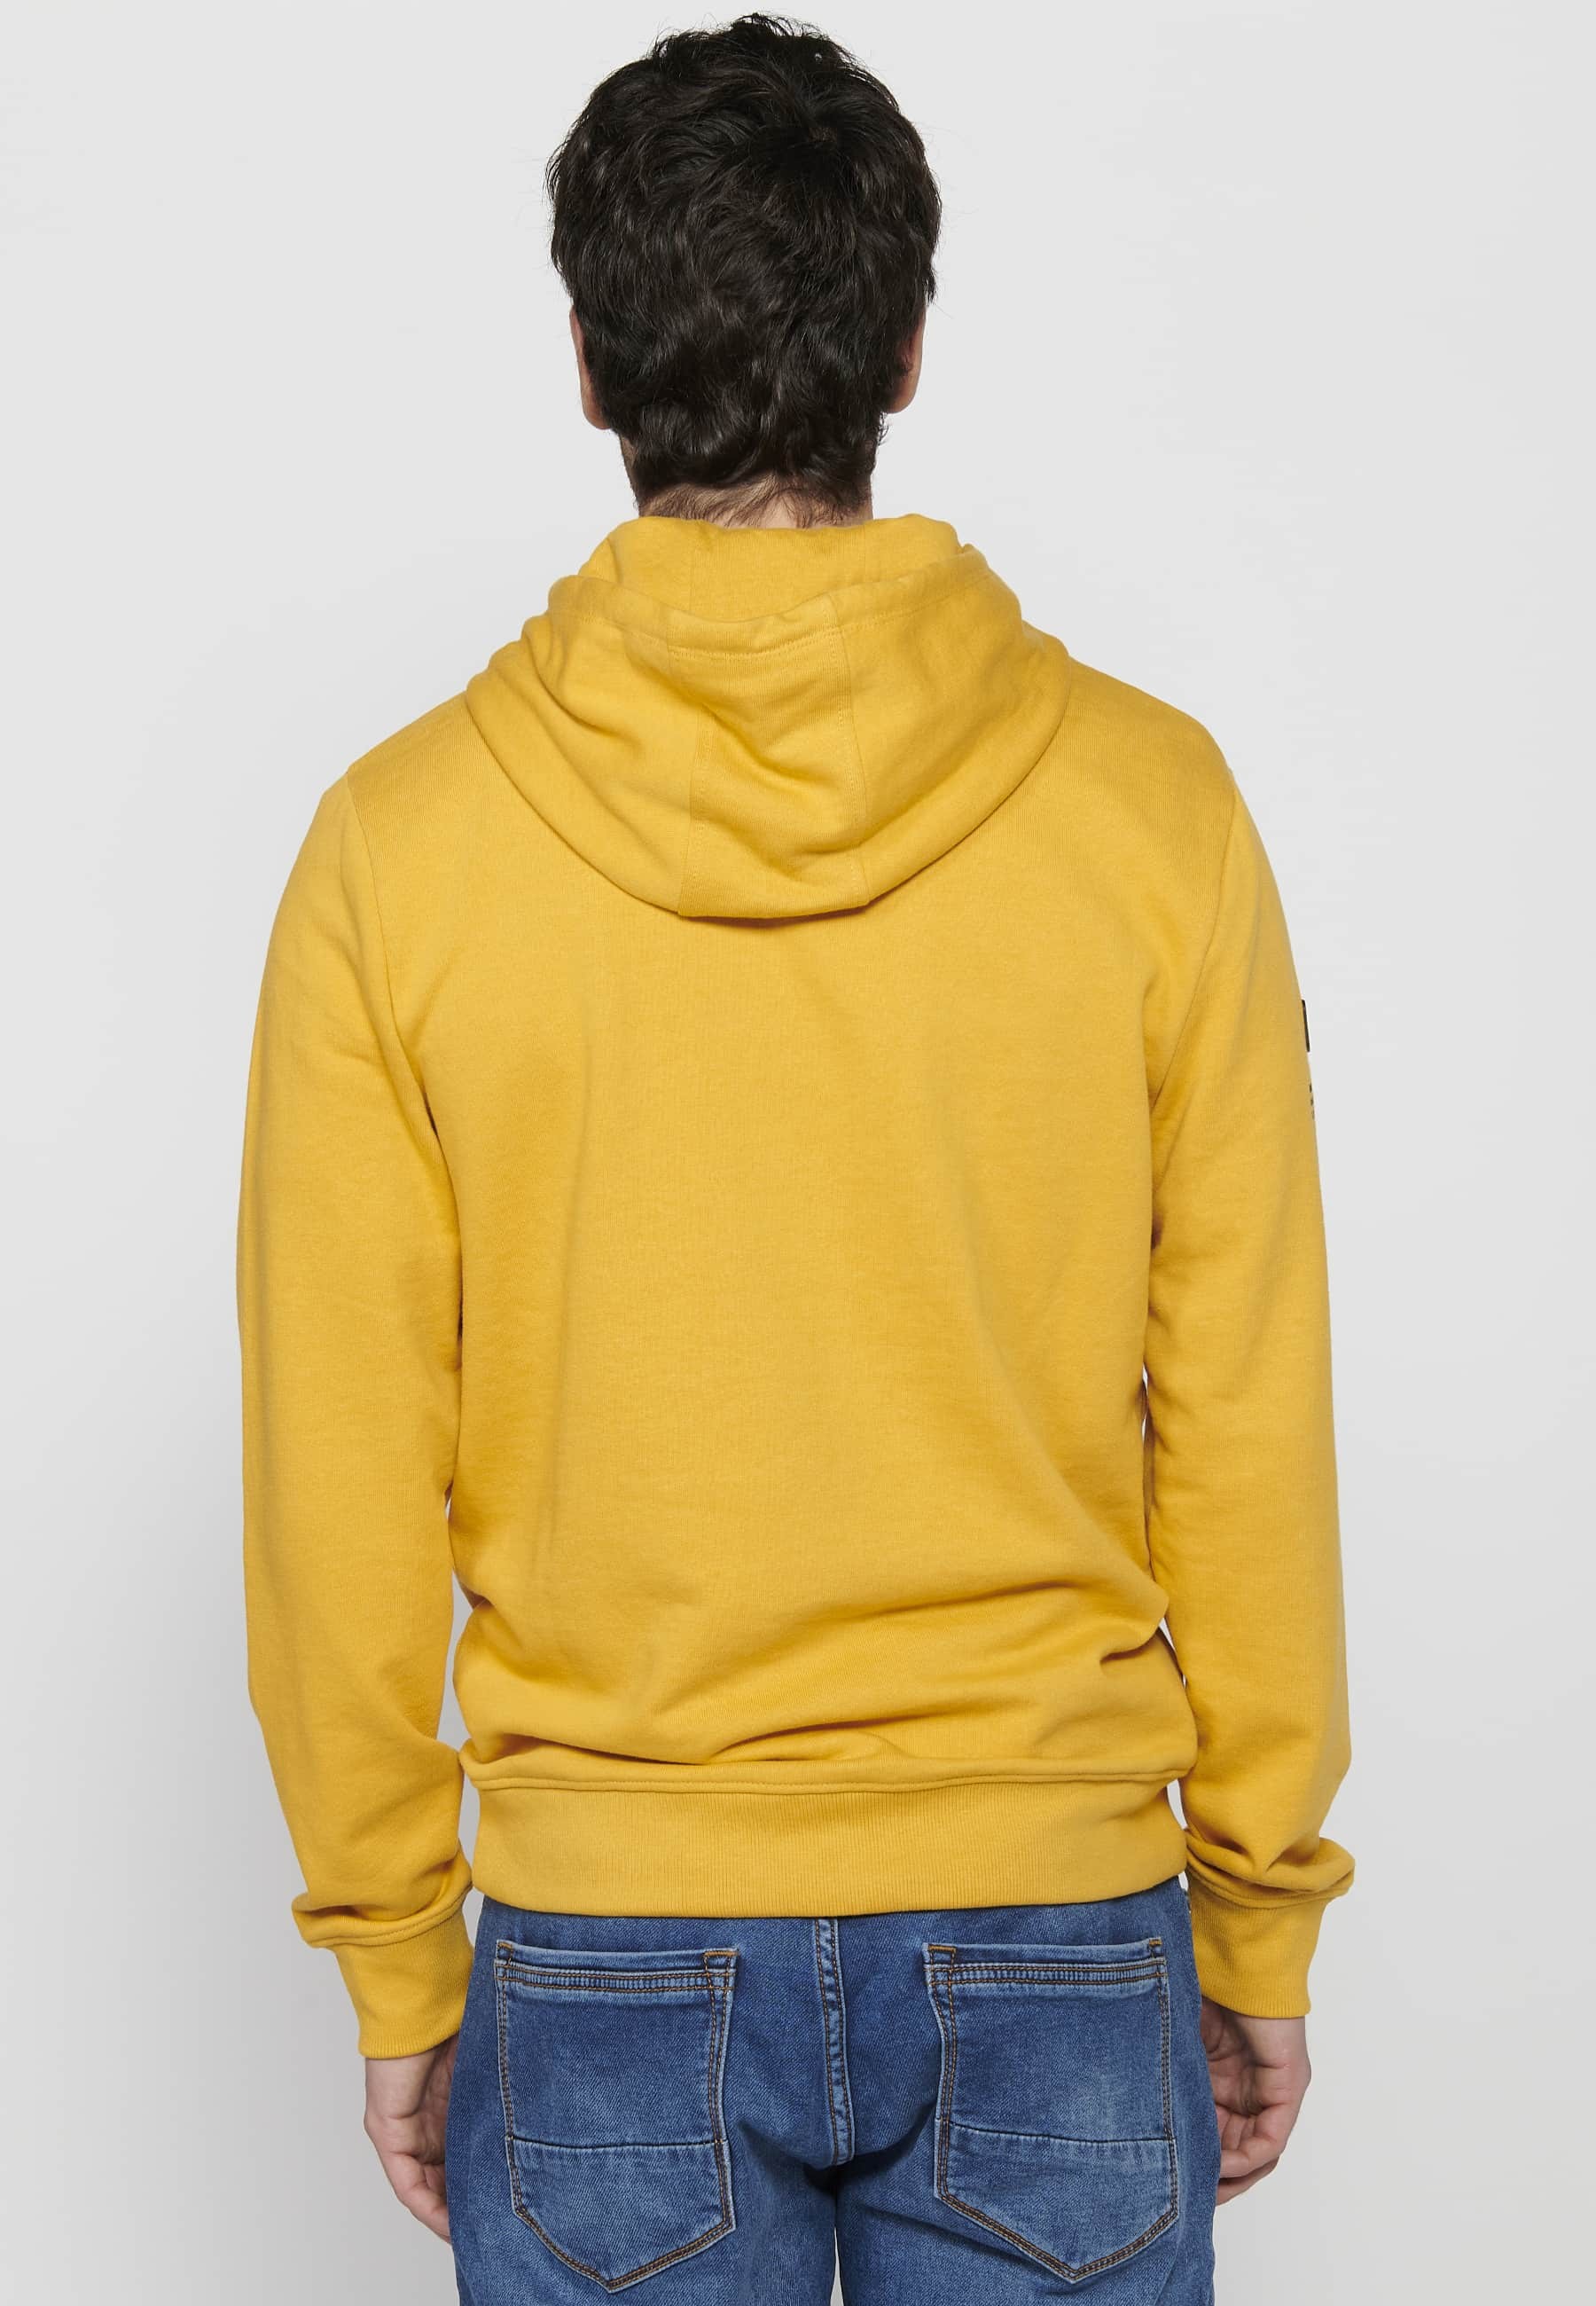 Langärmliges Sweatshirt mit gerippten Abschlüssen und Kapuzenkragen mit geprägten Buchstaben auf der Vorderseite in Gelb für Herren 5